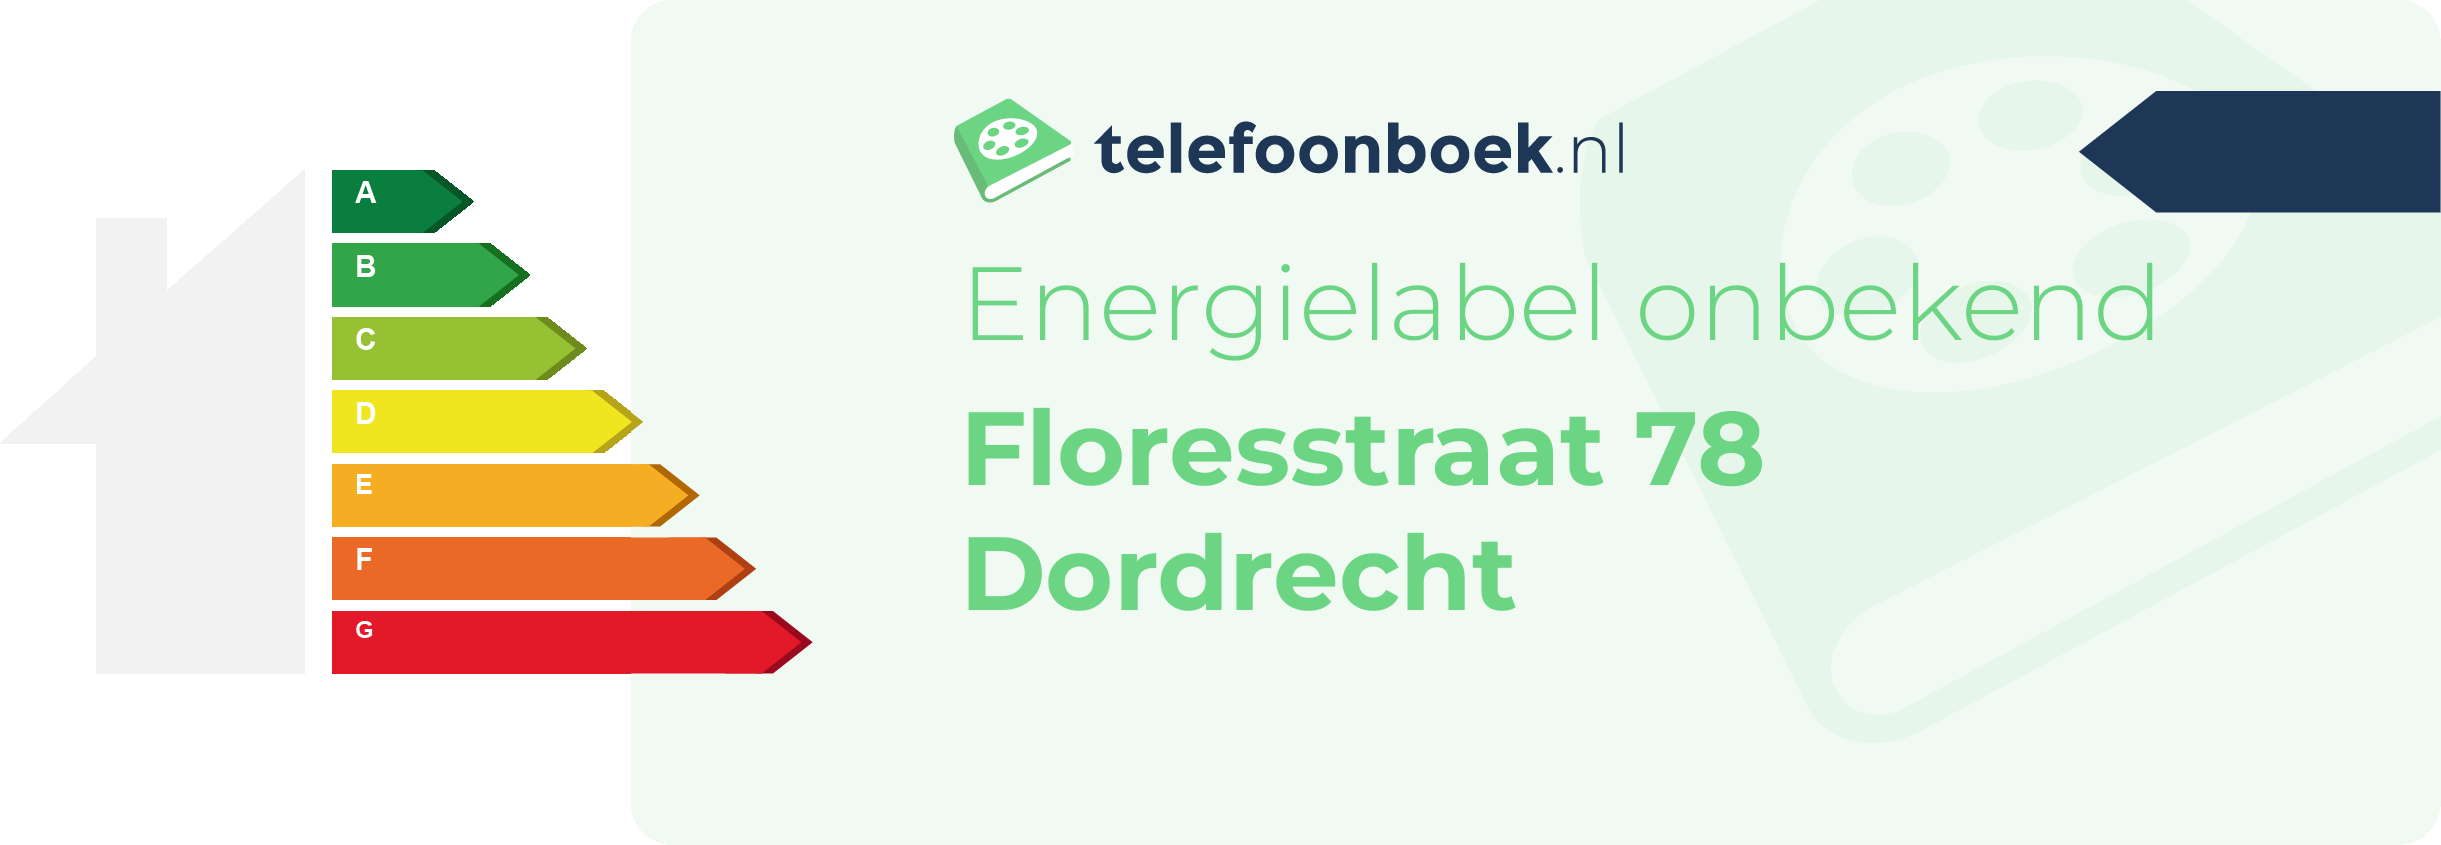 Energielabel Floresstraat 78 Dordrecht